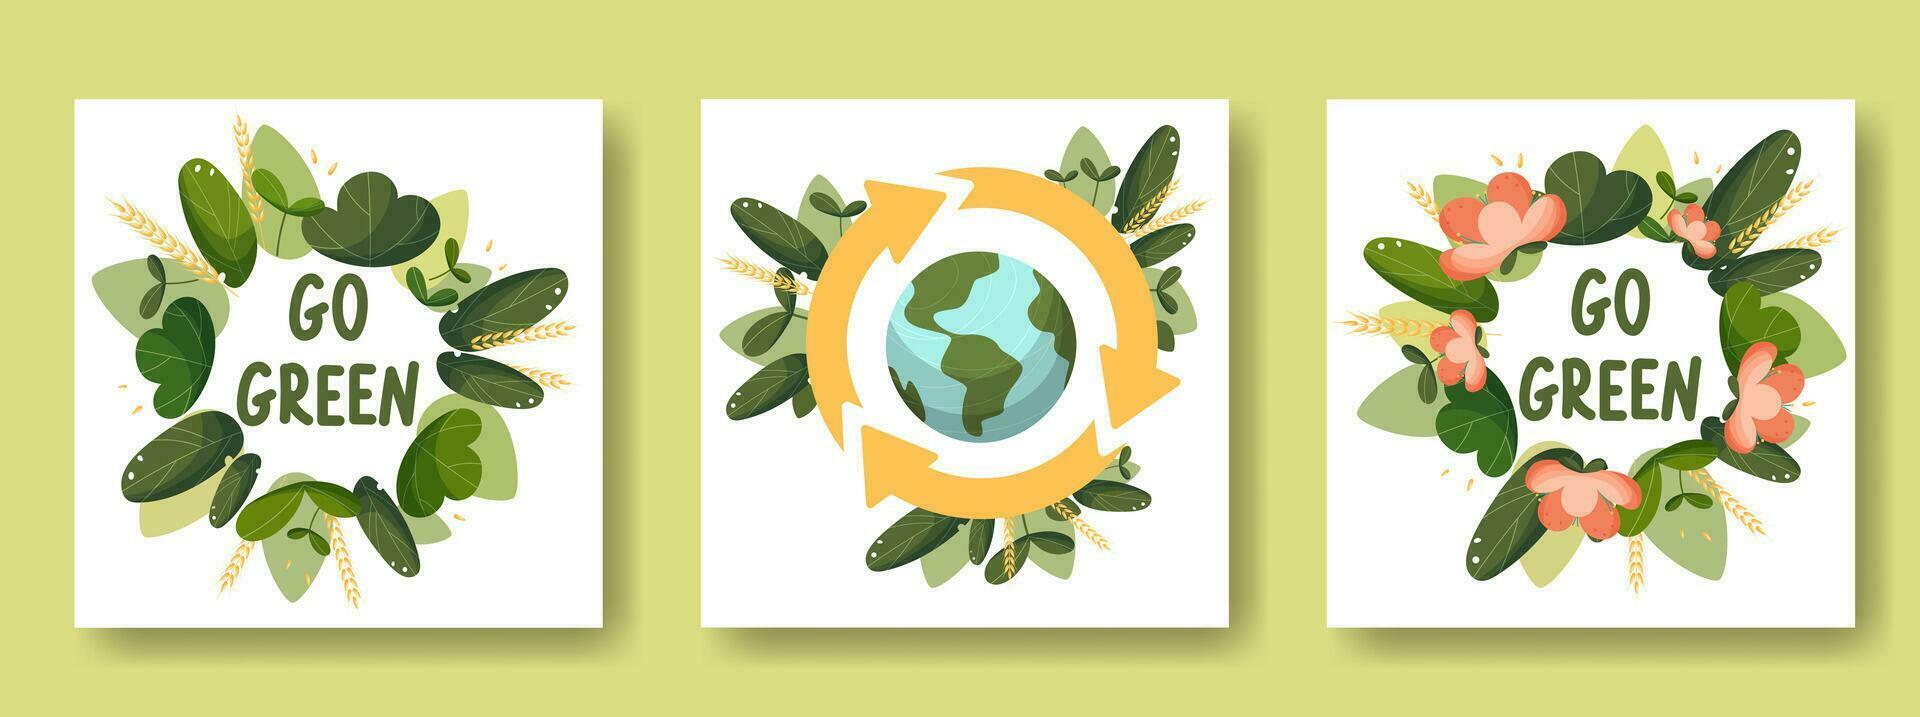 un conjunto de tarjetas en el tema de ahorro el tierra, tierra día. reciclar, amor el tierra, Vamos verde. en un guirnalda de hojas y flores vector ilustración, dibujos animados plano estilo.